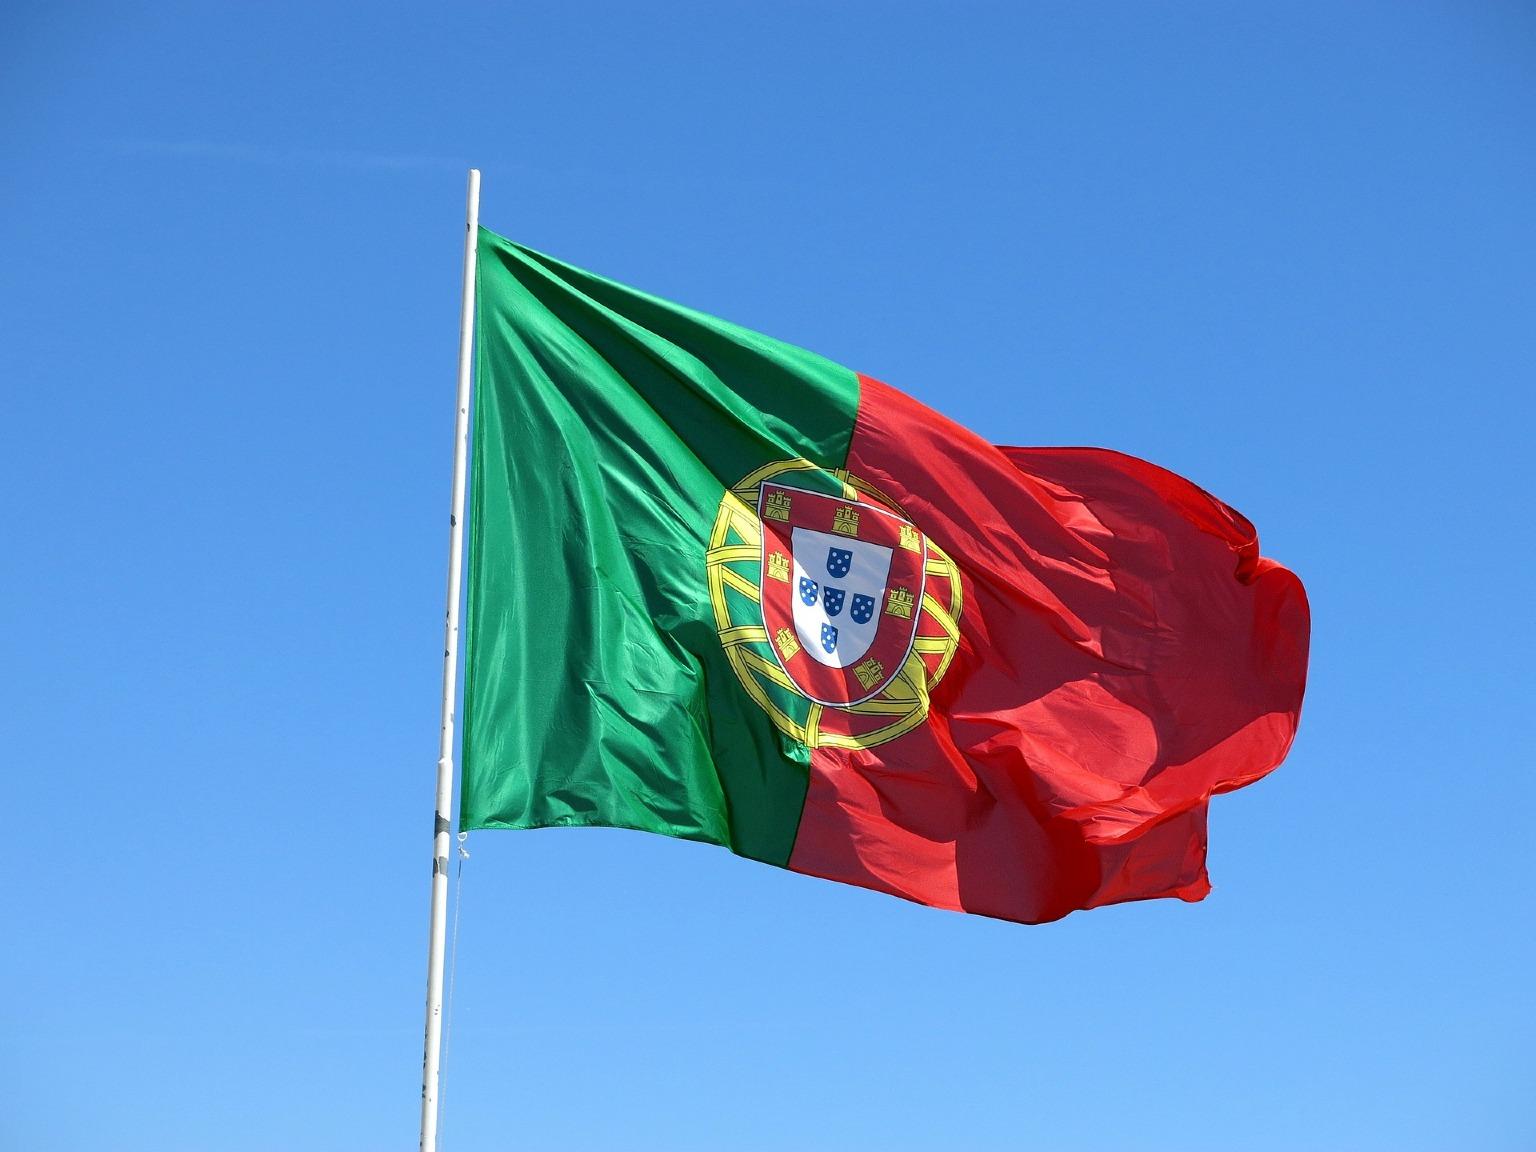 Bandeira de Portugal ondulando num fundo de céu azul. Celebração do Dia de Portugal e da unidade do povo português.